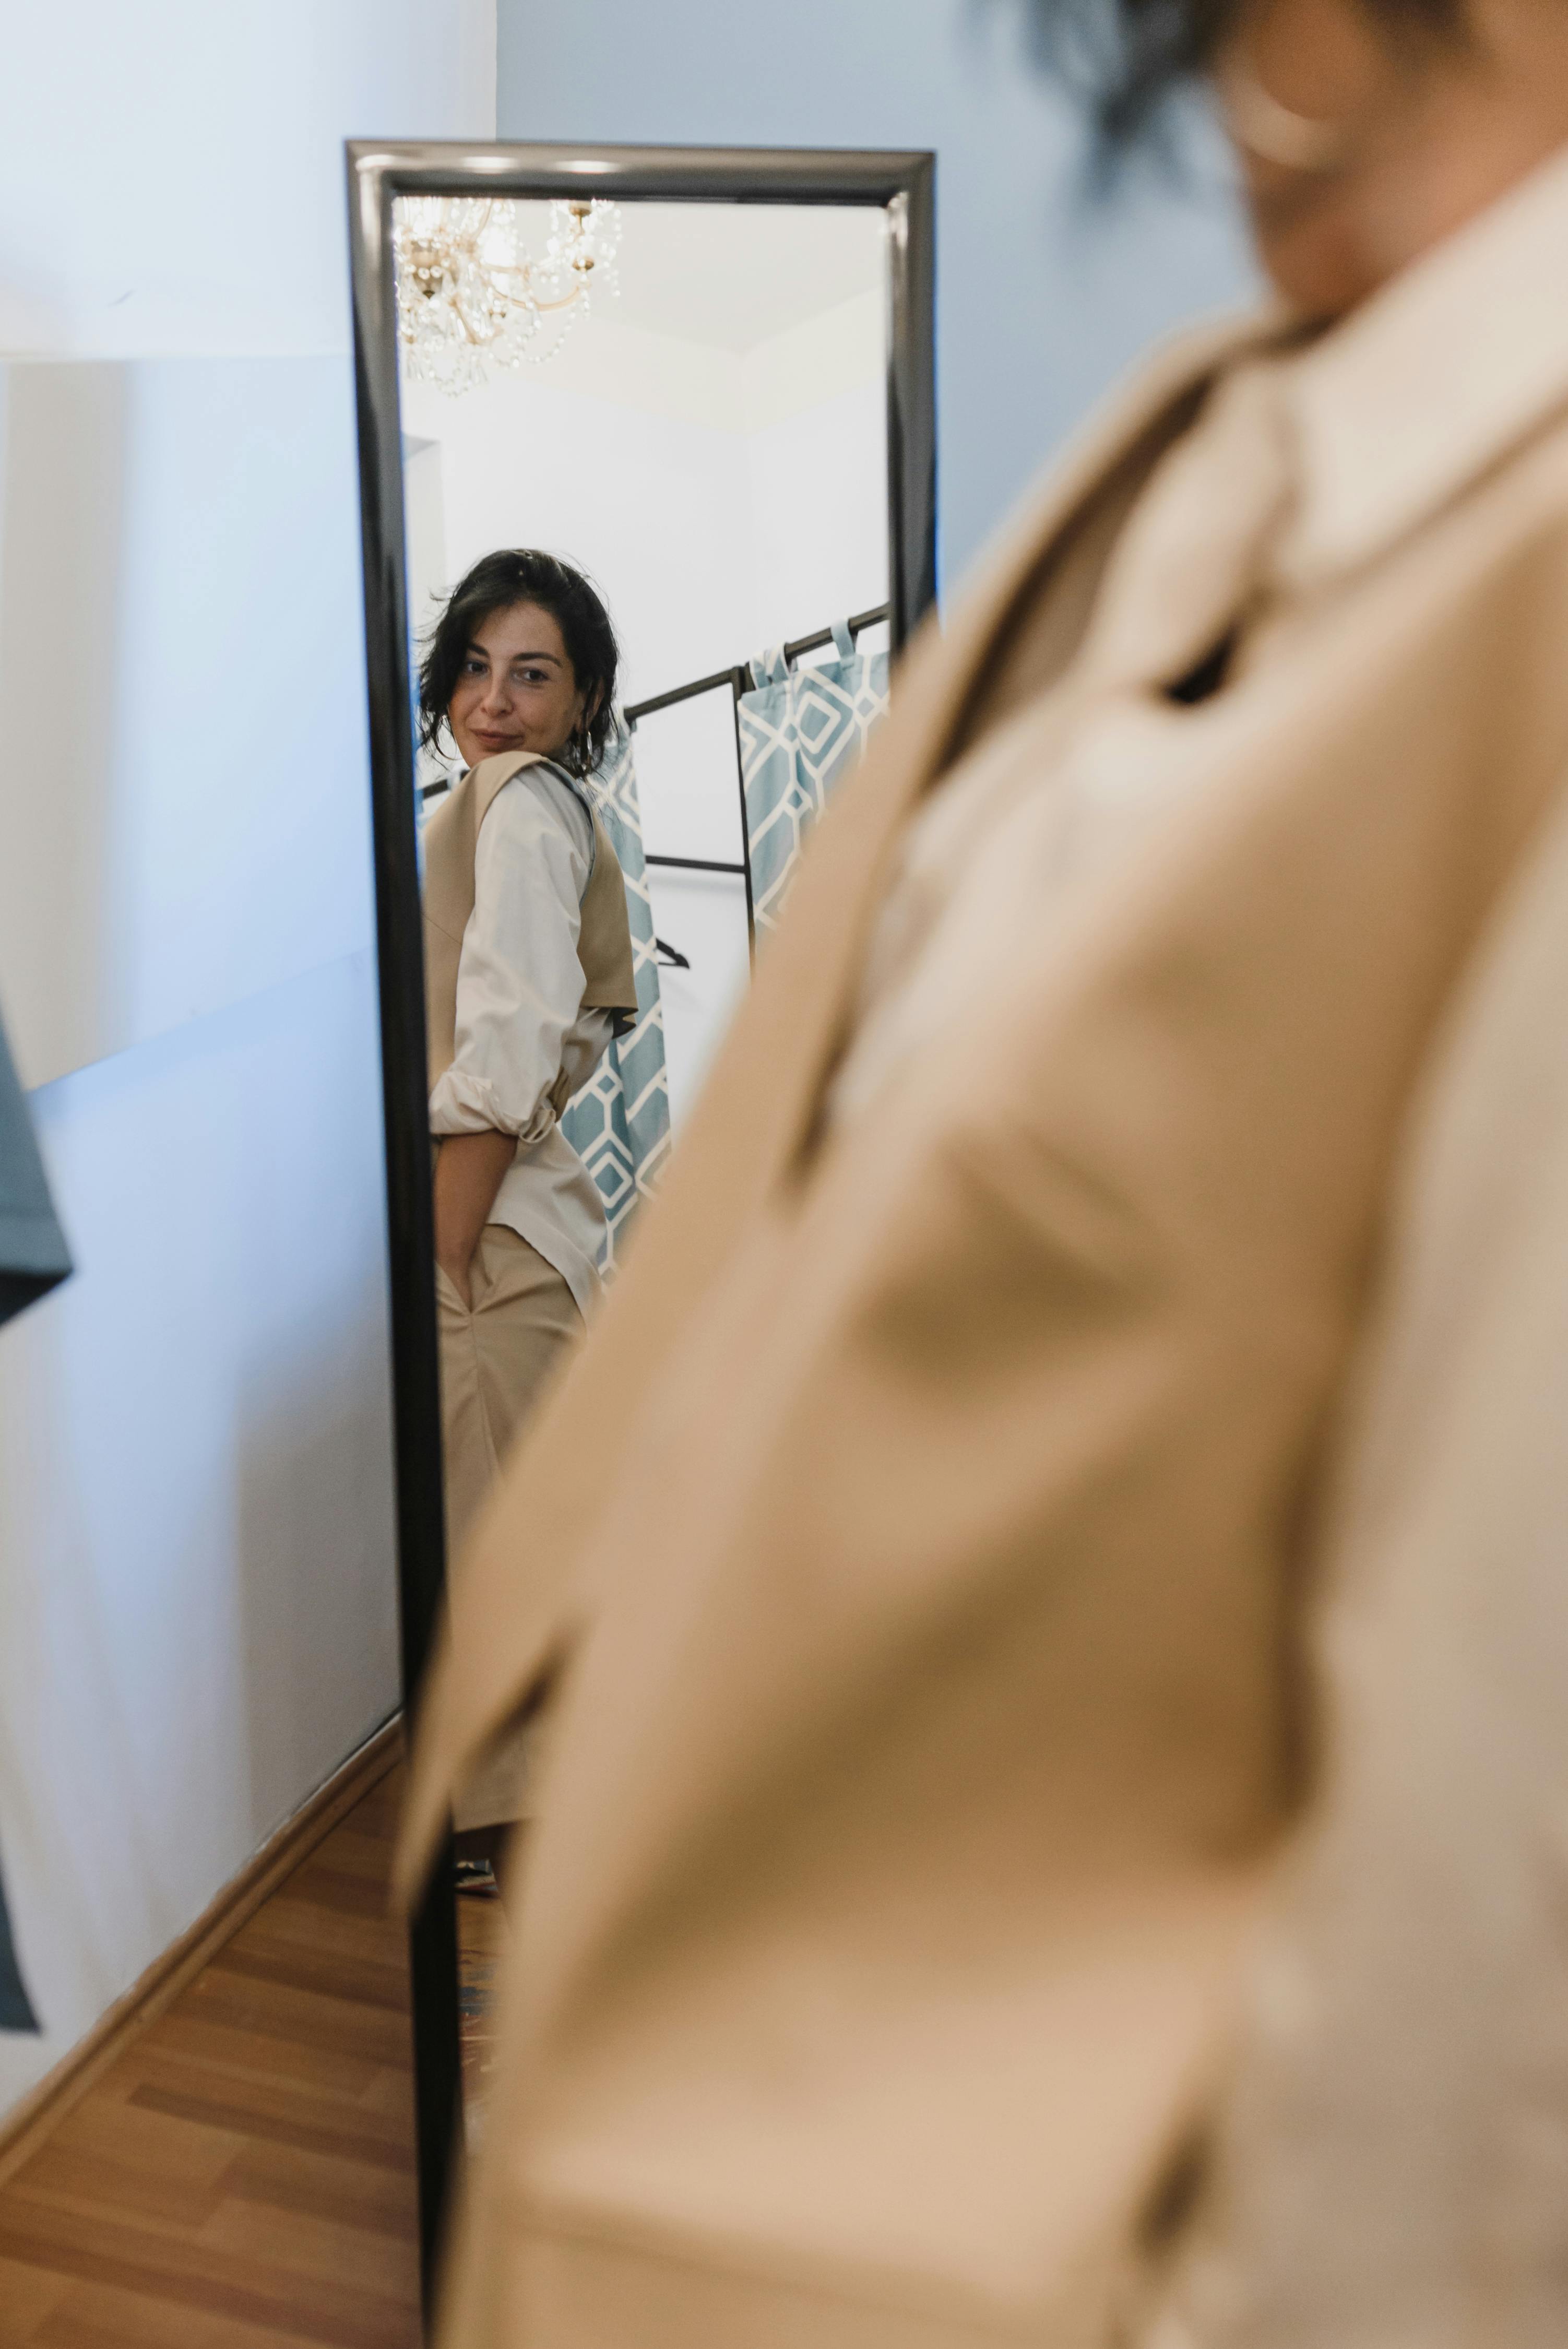 Una mujer comprueba su atuendo en el espejo. | Foto: Pexels